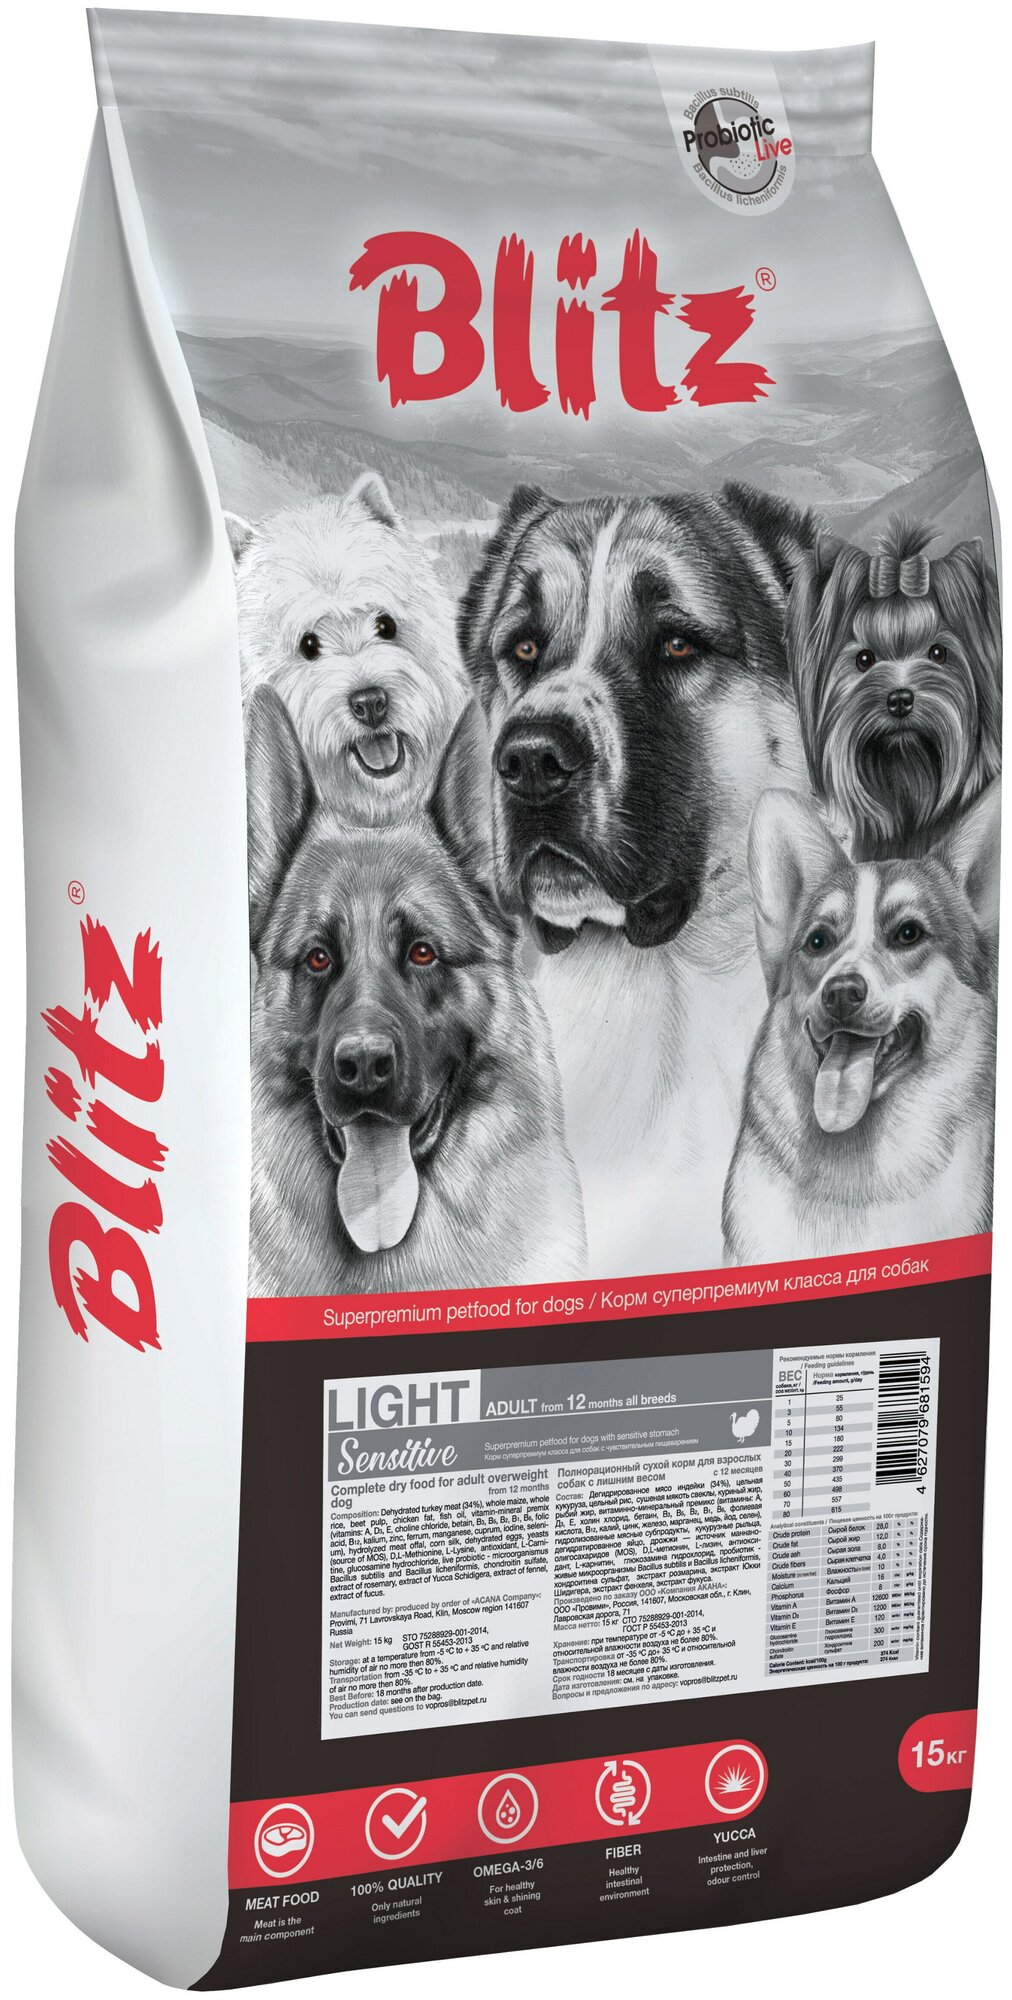 Blitz Adult Light - Сухой корм для собак с лишним весом 15кг